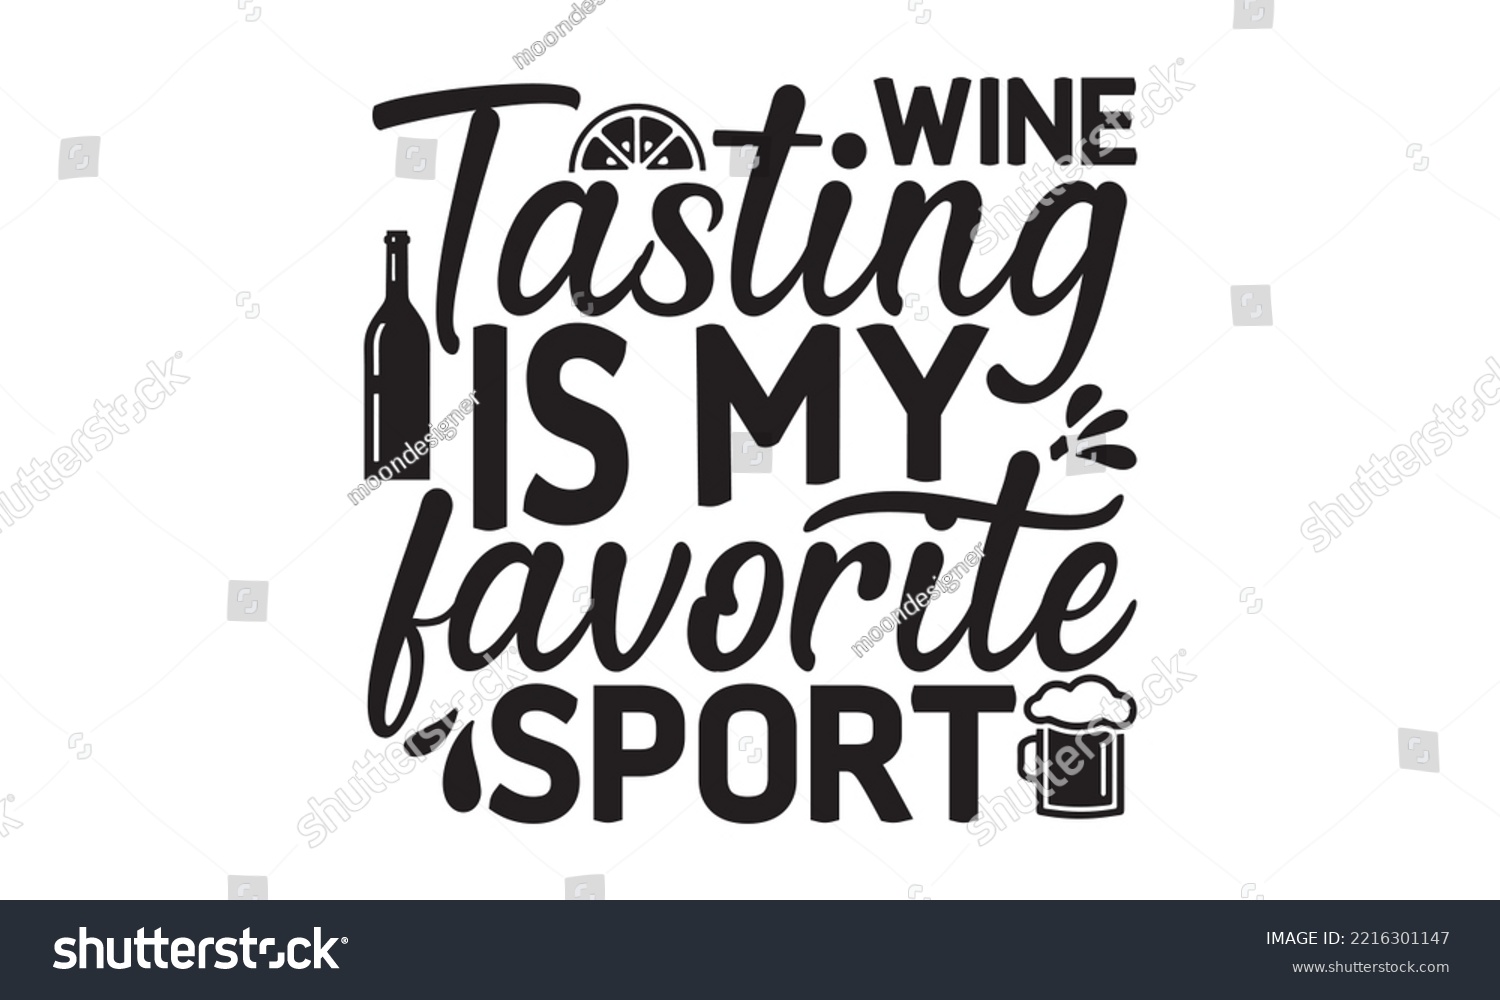 SVG of Wine tasting is my favorite sport - Alcohol SVG T Shirt design, Girl Beer Design, Prost, Pretzels and Beer, Vector EPS Editable Files, Alcohol funny quotes, Oktoberfest Alcohol SVG design,  EPS 10 svg